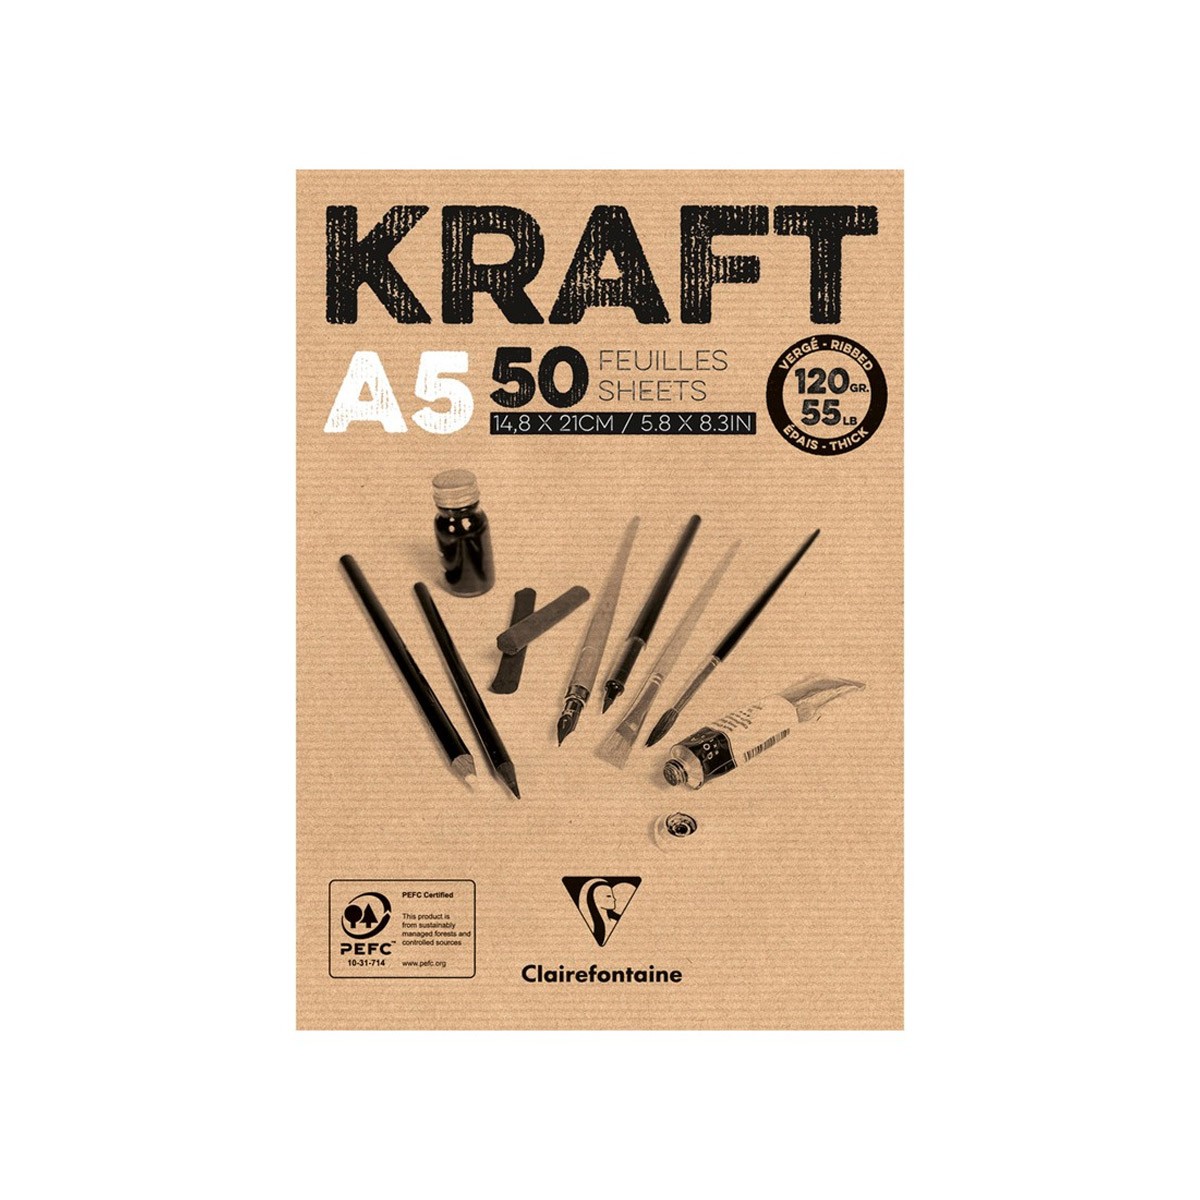 Скетчбук - блокнот 50л. А5 на склейке Clairefontaine "Kraft", 120г/м2, верже, крафт